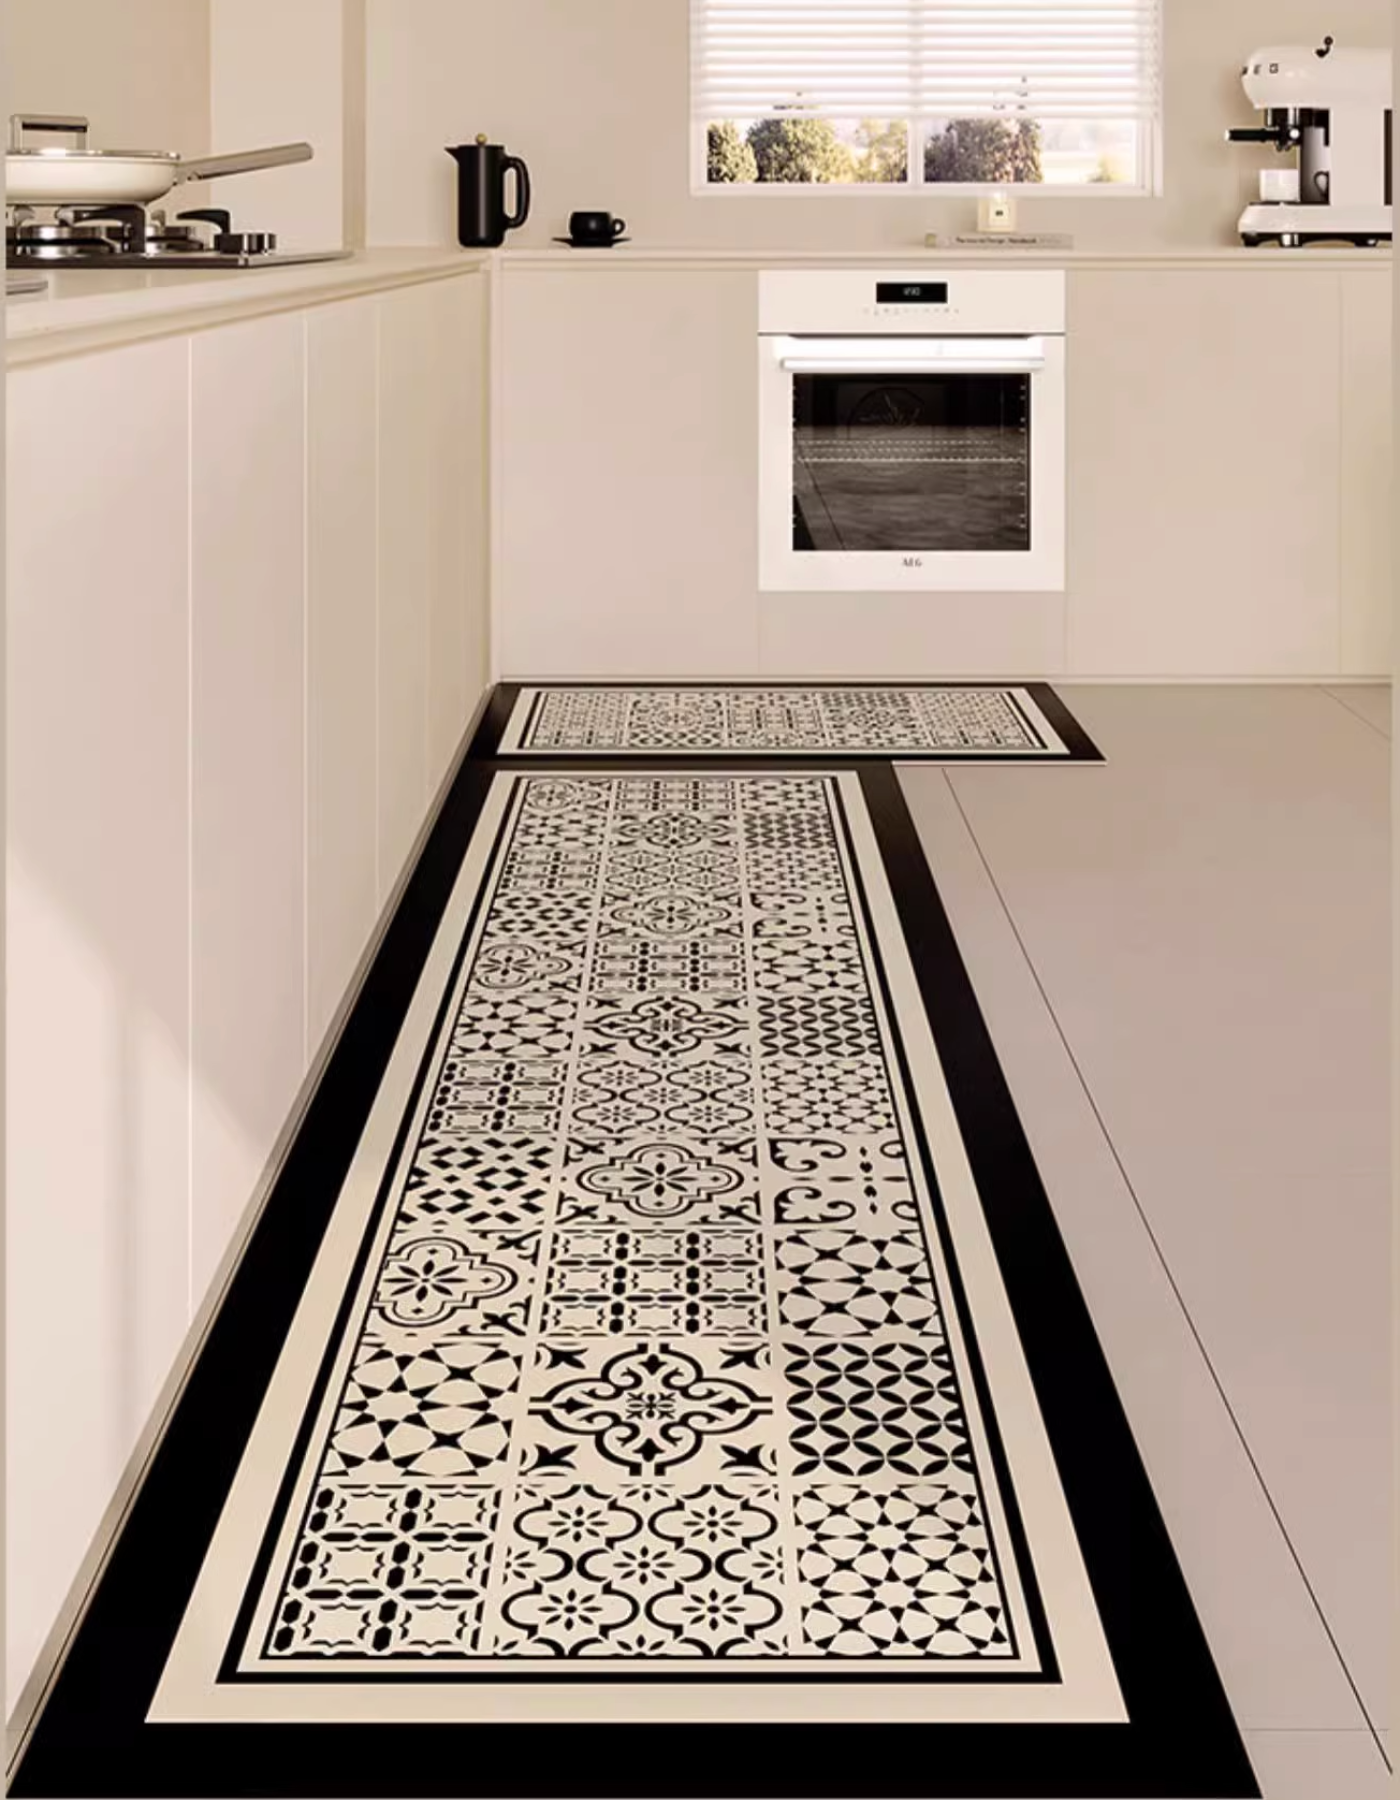 https://maisonmatta.ca/cdn/shop/files/portuguese-tiles-kitchen-mat-2.png?v=1692993958&width=1445